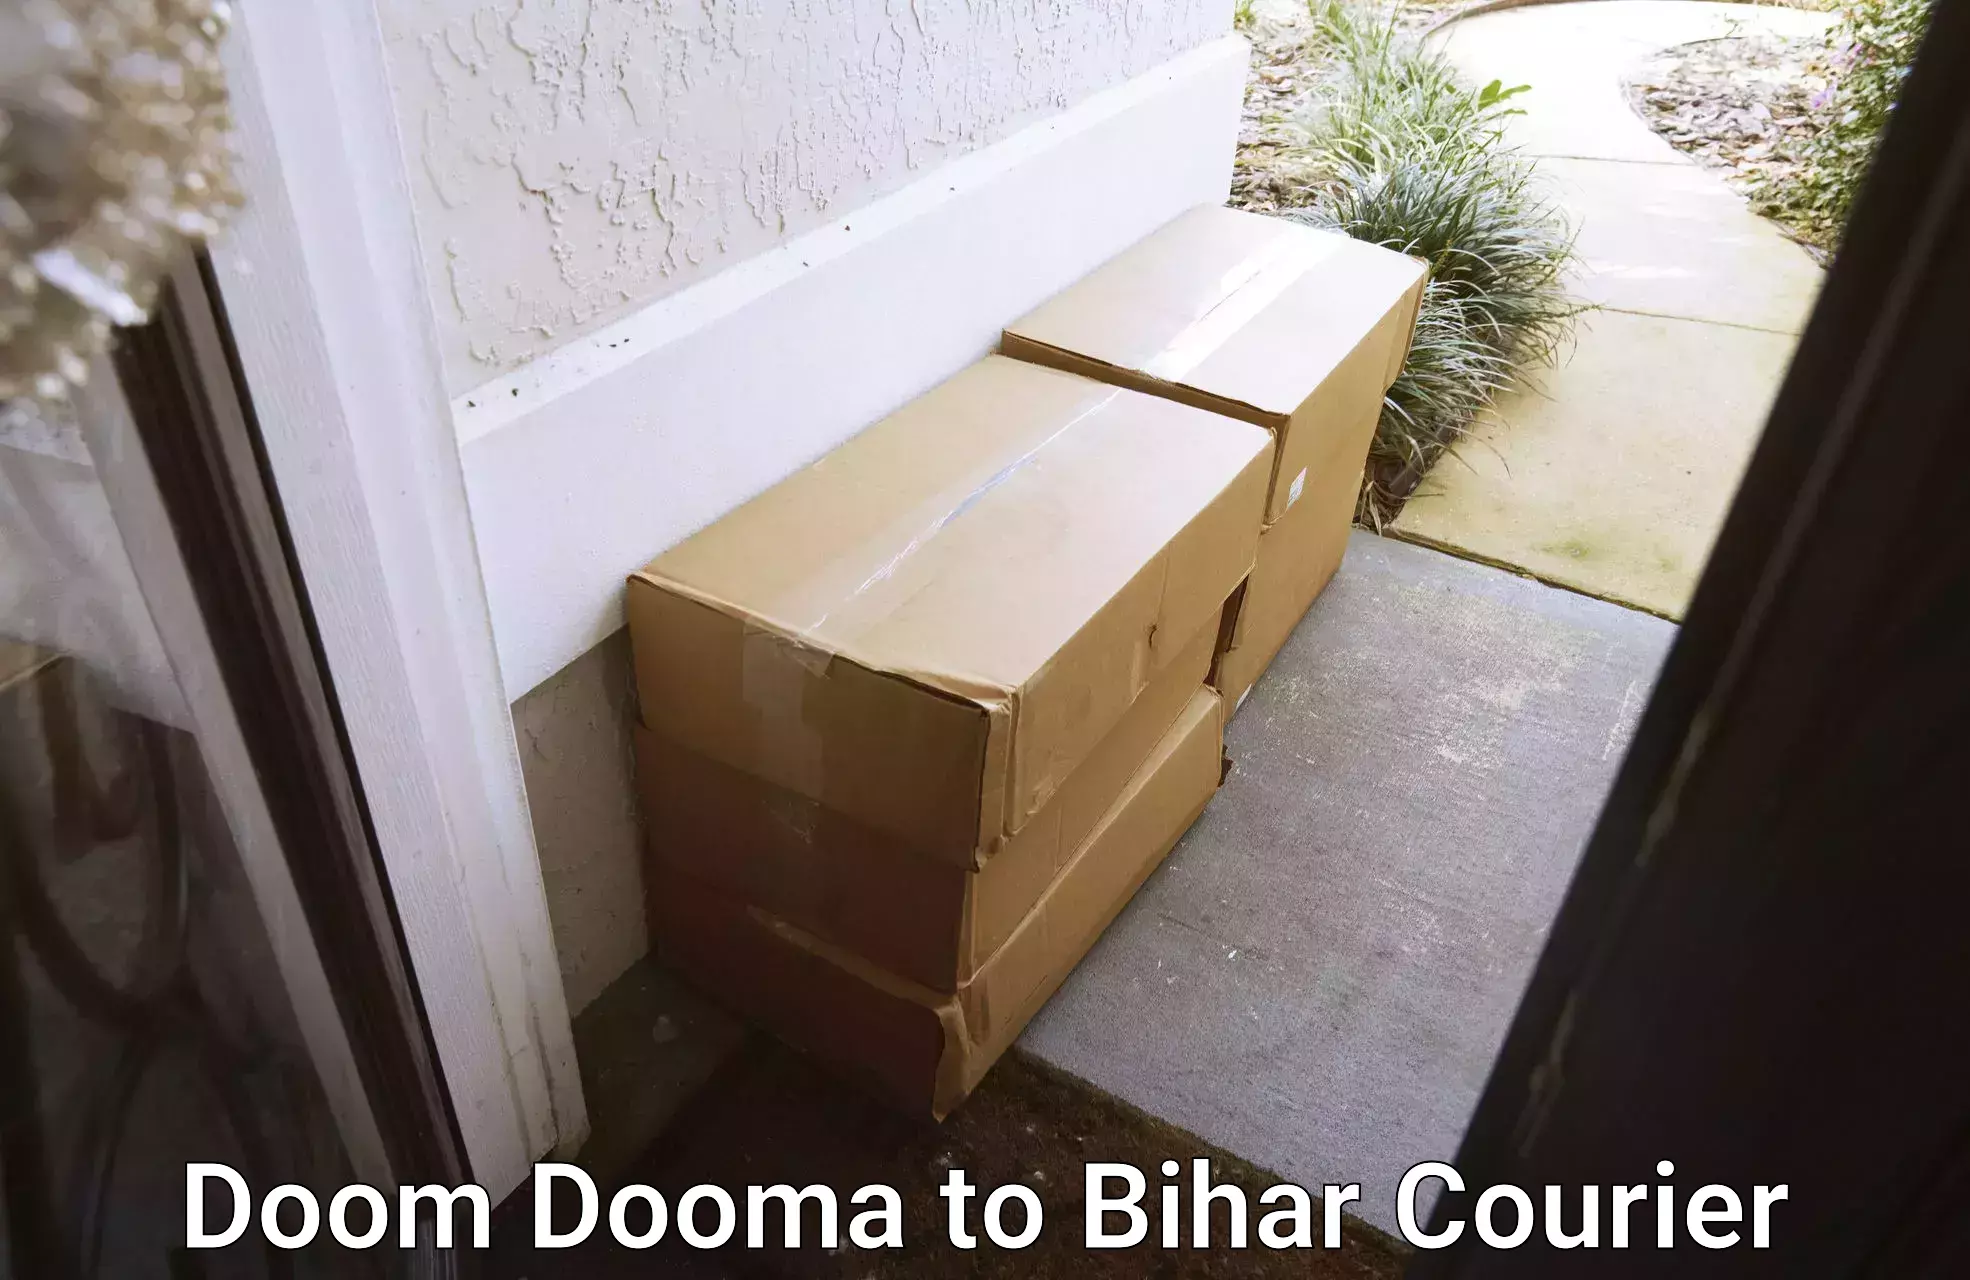 Smart courier technologies in Doom Dooma to Biraul